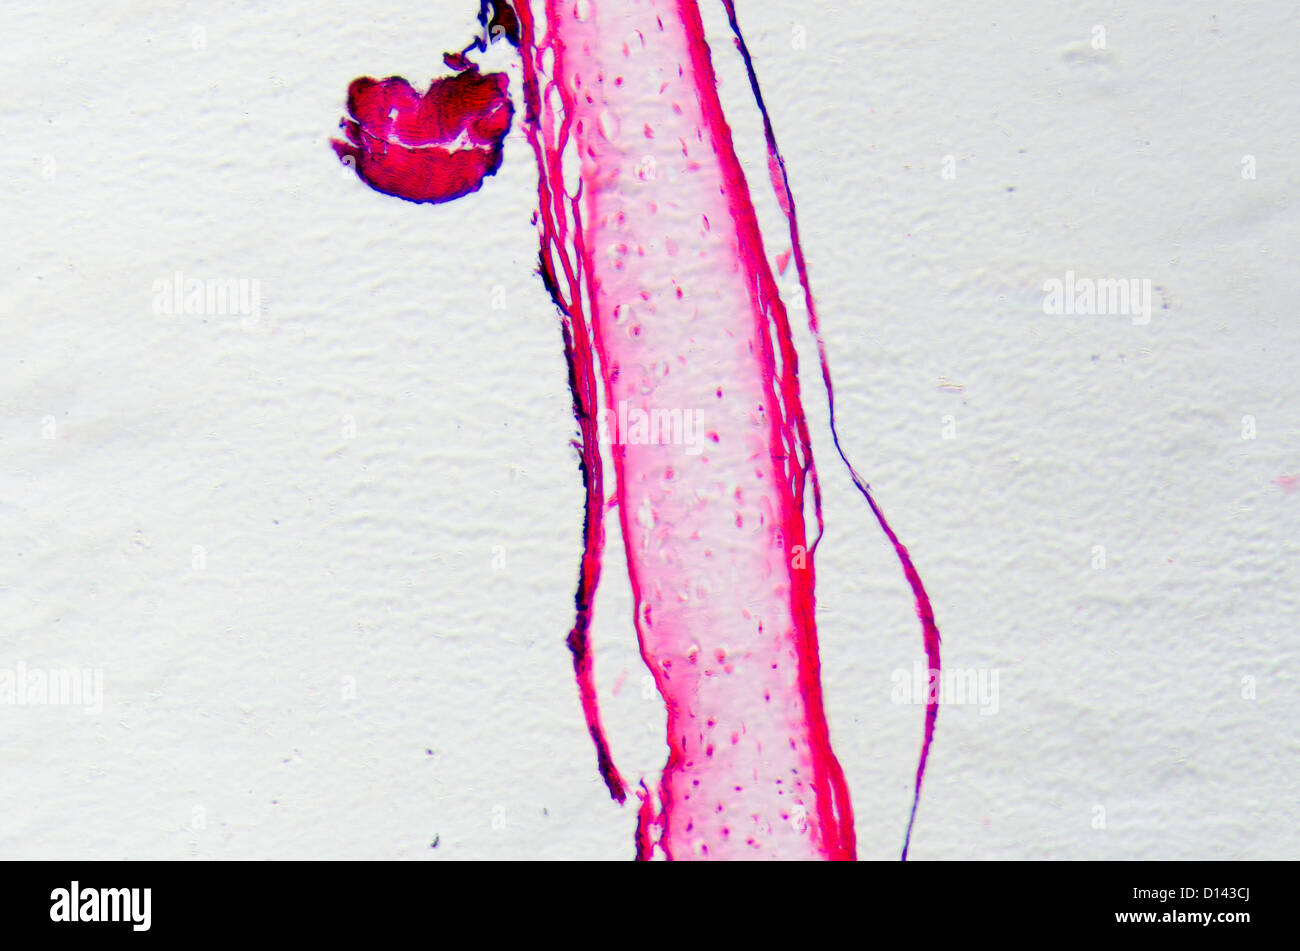 Micrographie des sciences de cellule osseuse osteocyte Banque D'Images